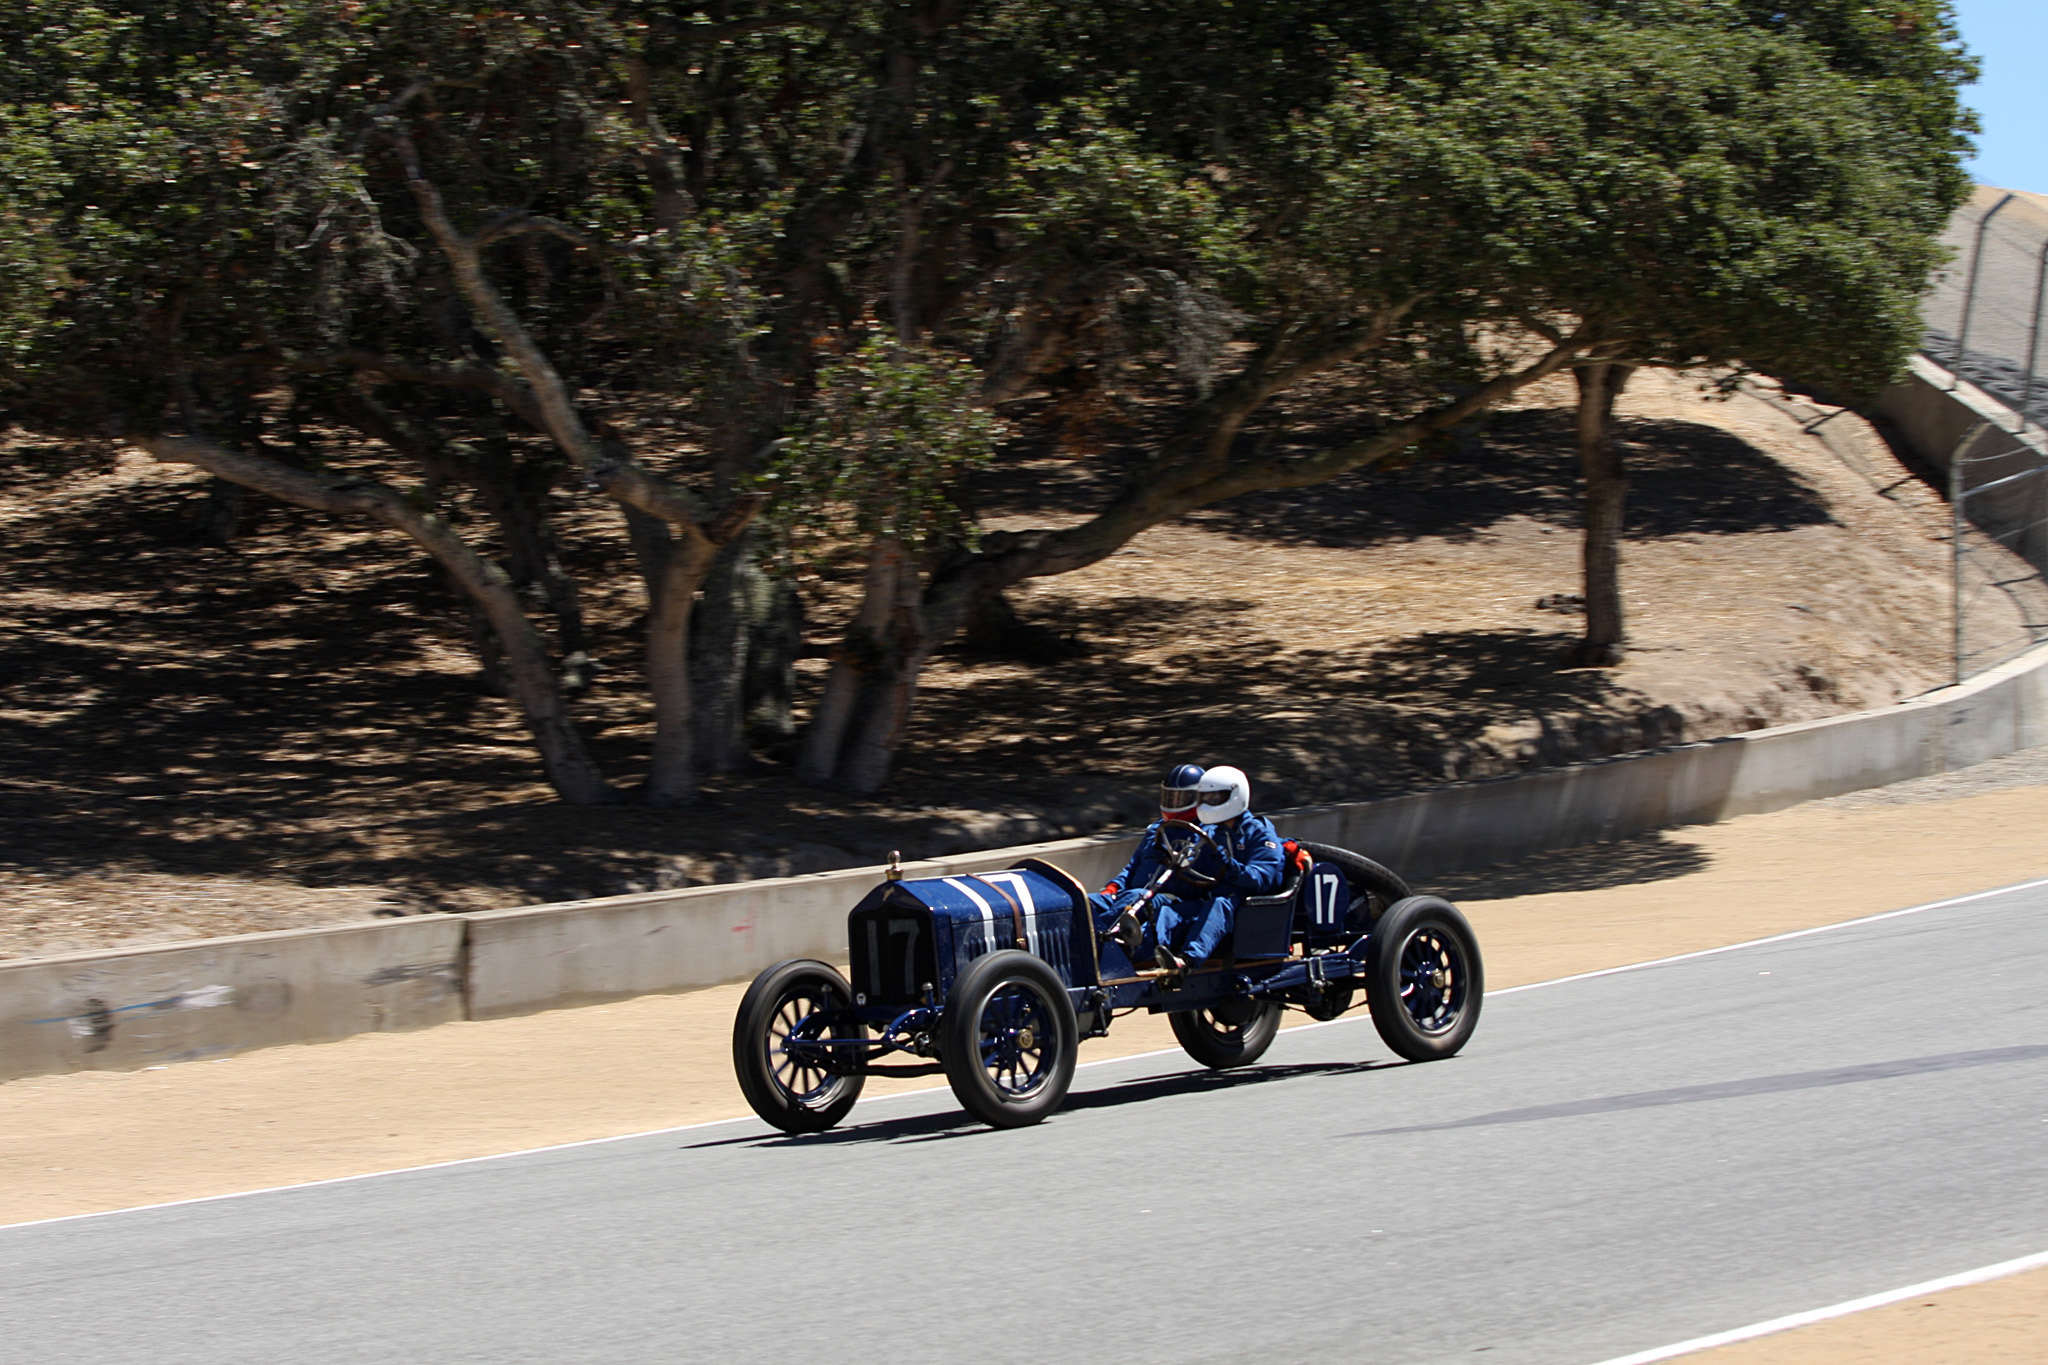 2014 Rolex Monterey Motorsports Reunion-2